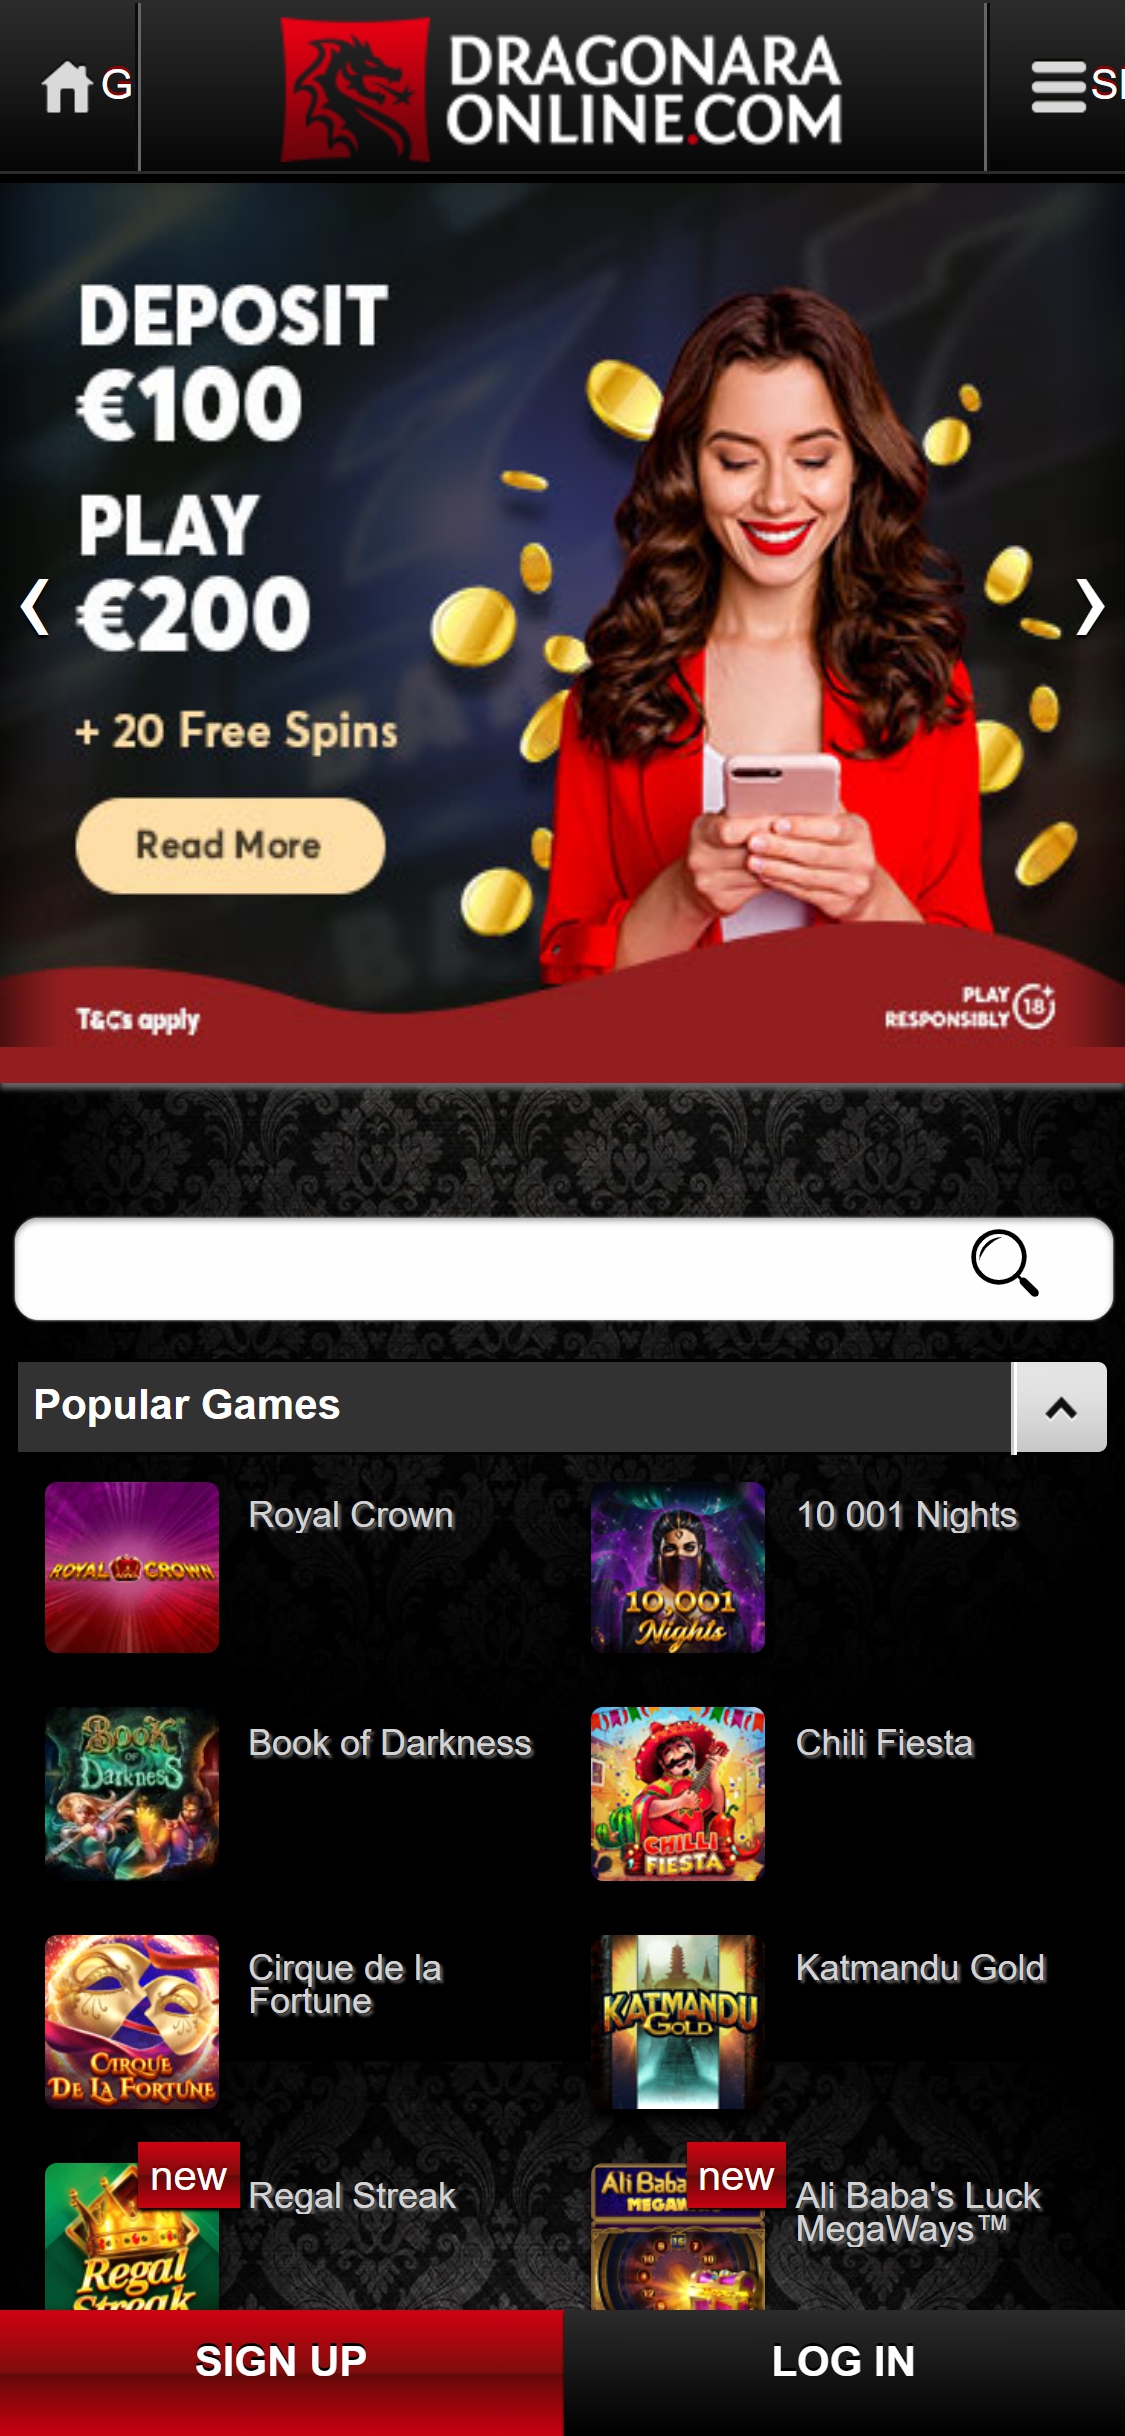 Dragonara Casino Mobile Review